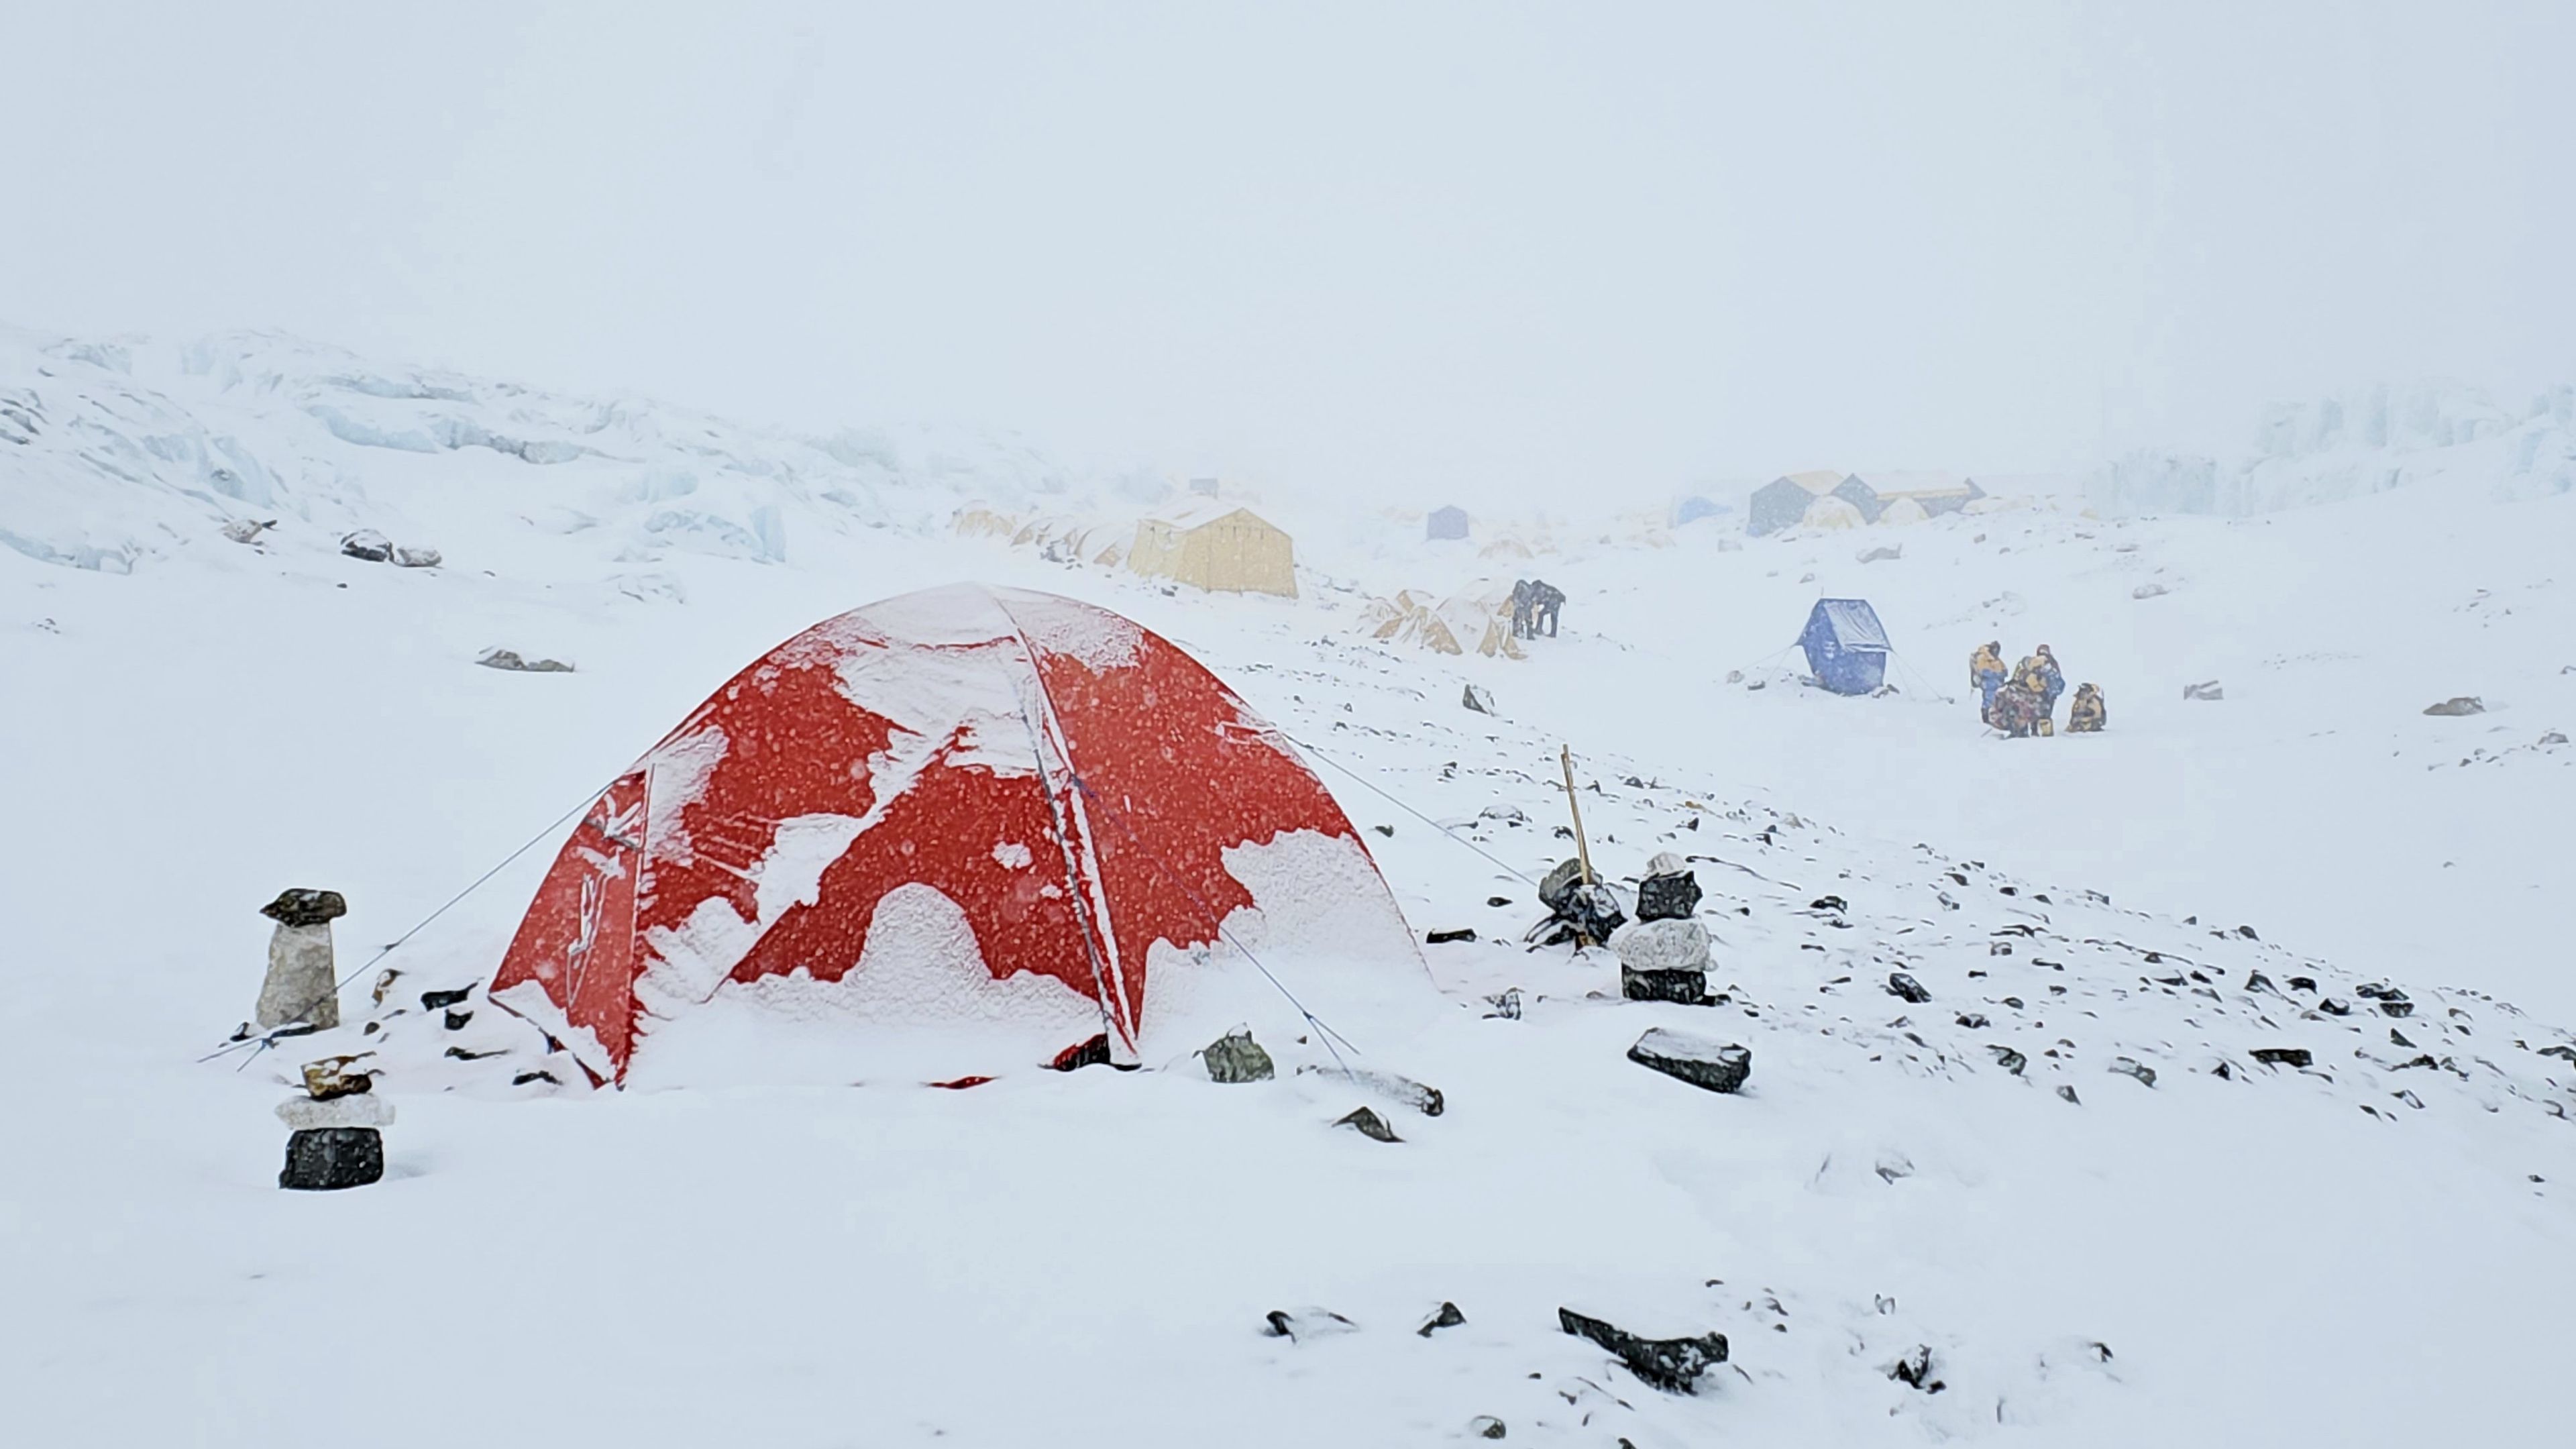 Suhajda Szilárd sátra behavazódott, egyelőre nincs hiteles információ, hogy mi történt a mászóval. (Fotó: Kyocera Everest Expedíció 2023)